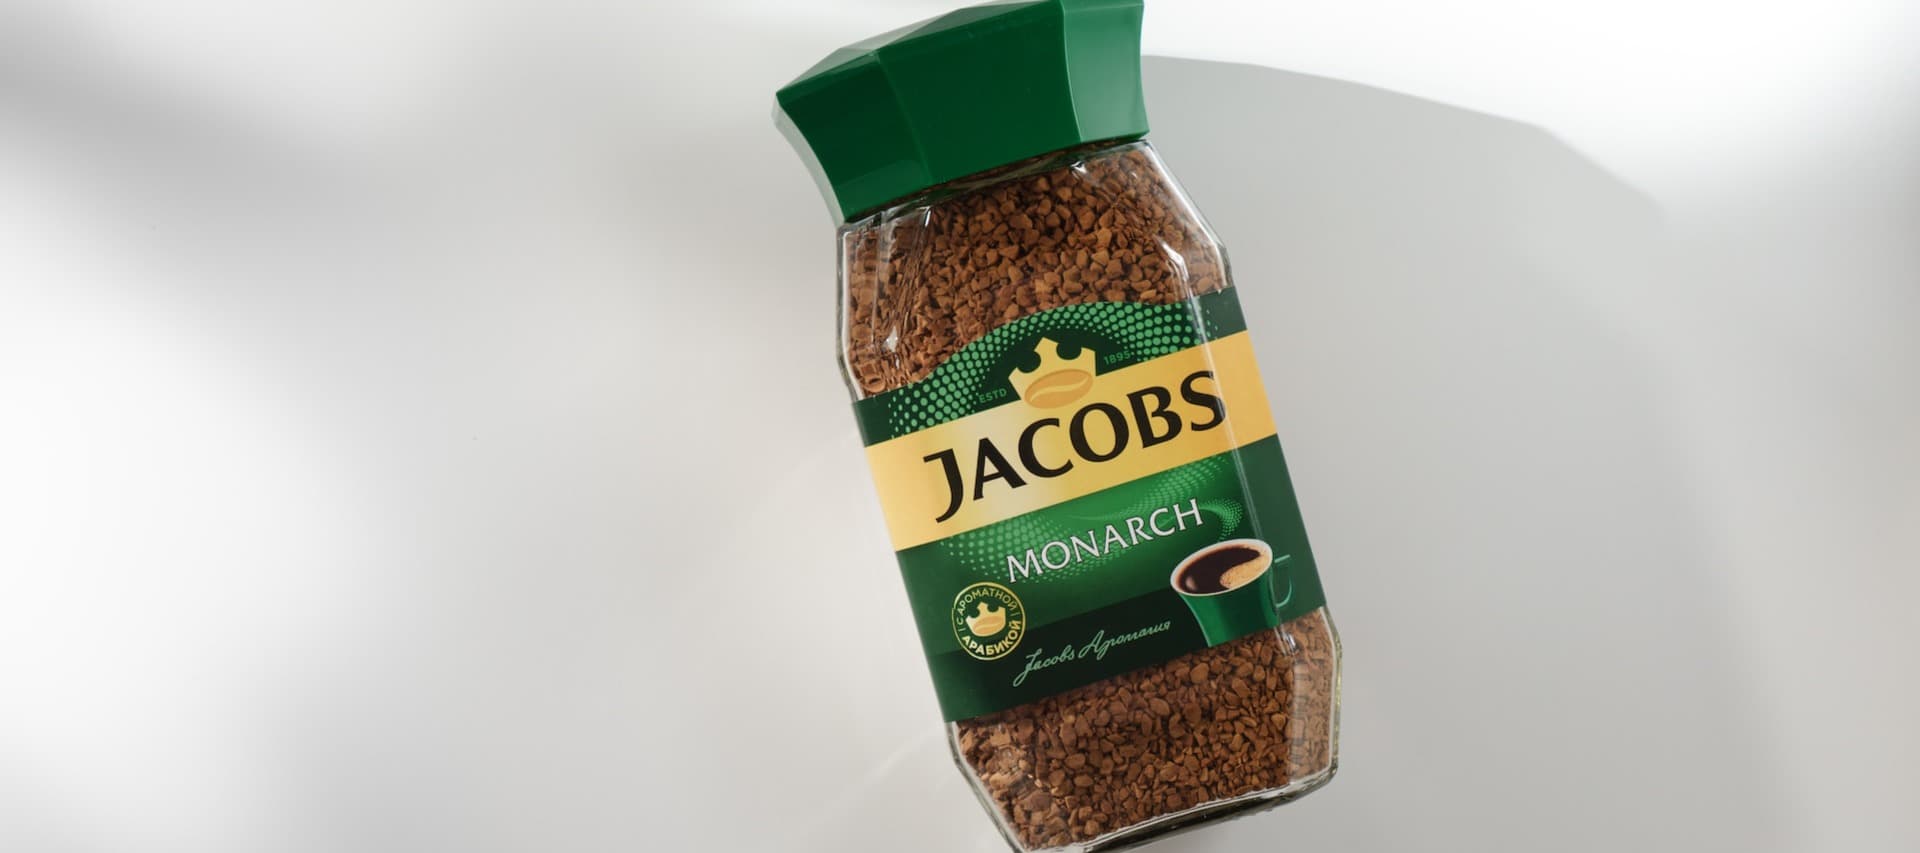 Фото новости: "Производитель кофе Jacobs хочет отказаться от использования бренда в России"